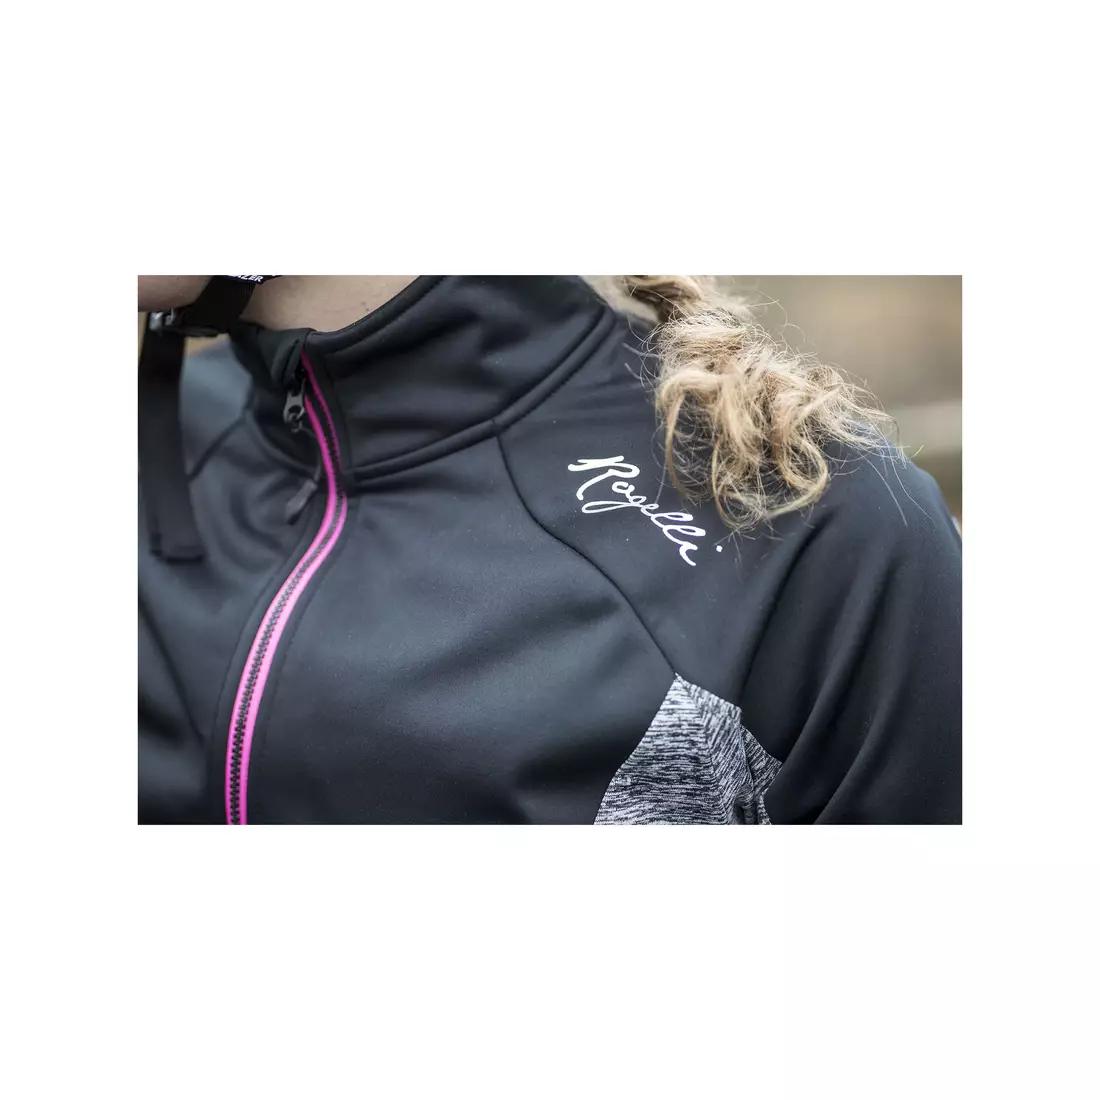 ROGELLI CARLYN 2.0 női téli kerékpáros kabát, fekete-szürke-rózsaszín